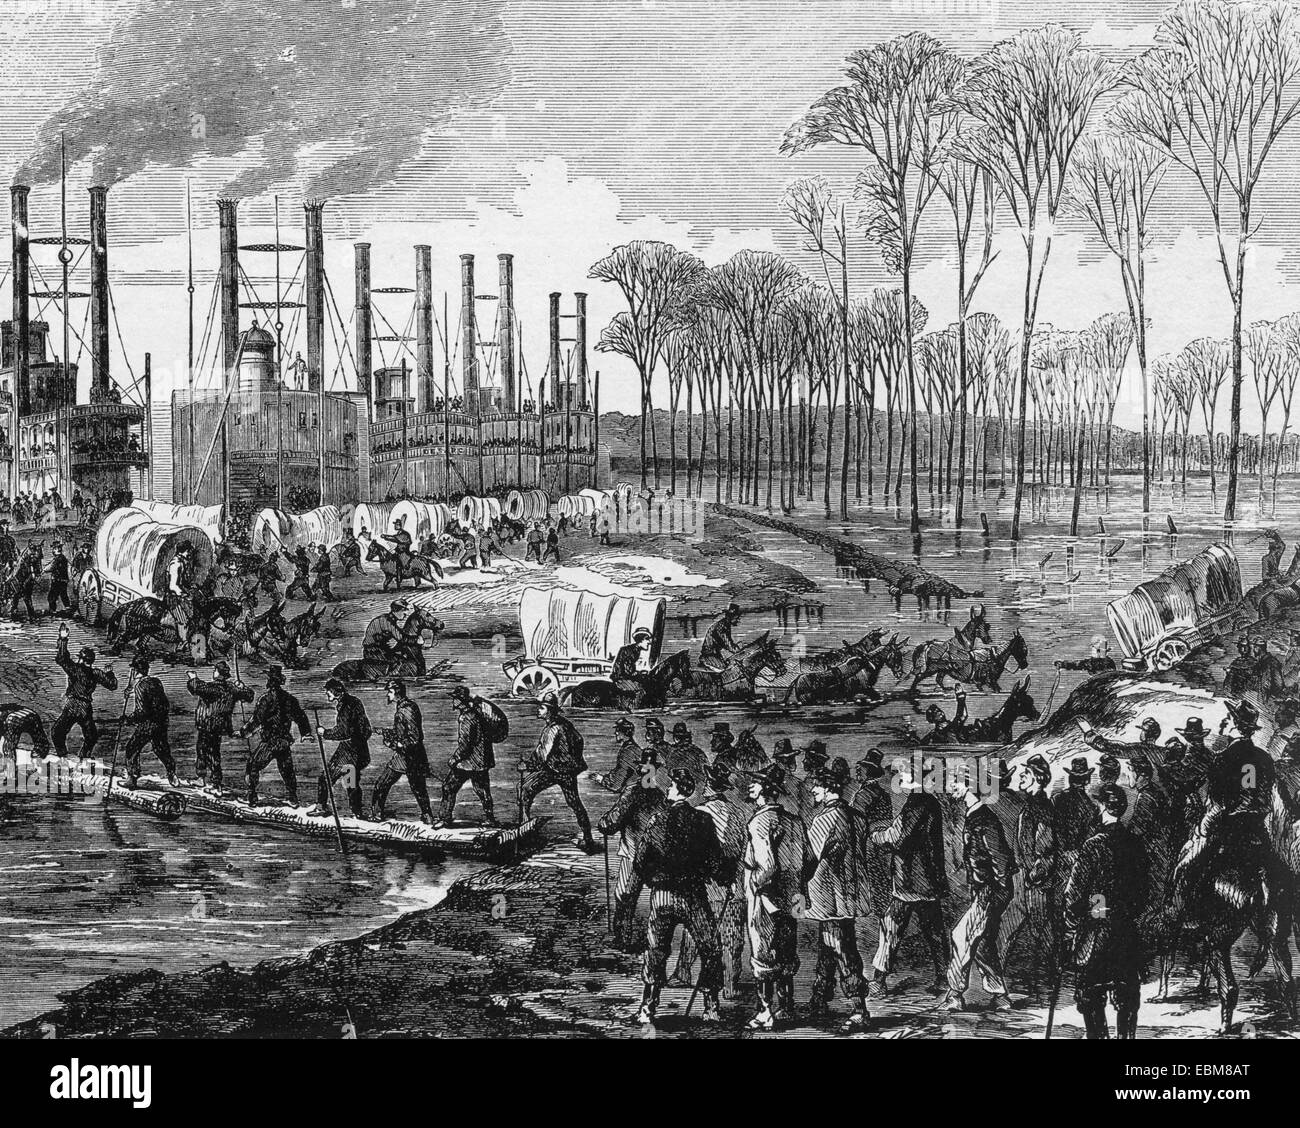 Guerra Civil Americana Union Camp en Young's Point preparándose para el asalto final en Vicksburg, en enero de 1863. Situada en la orilla oeste del Mississippi al sur de Milliken's Bend Foto de stock